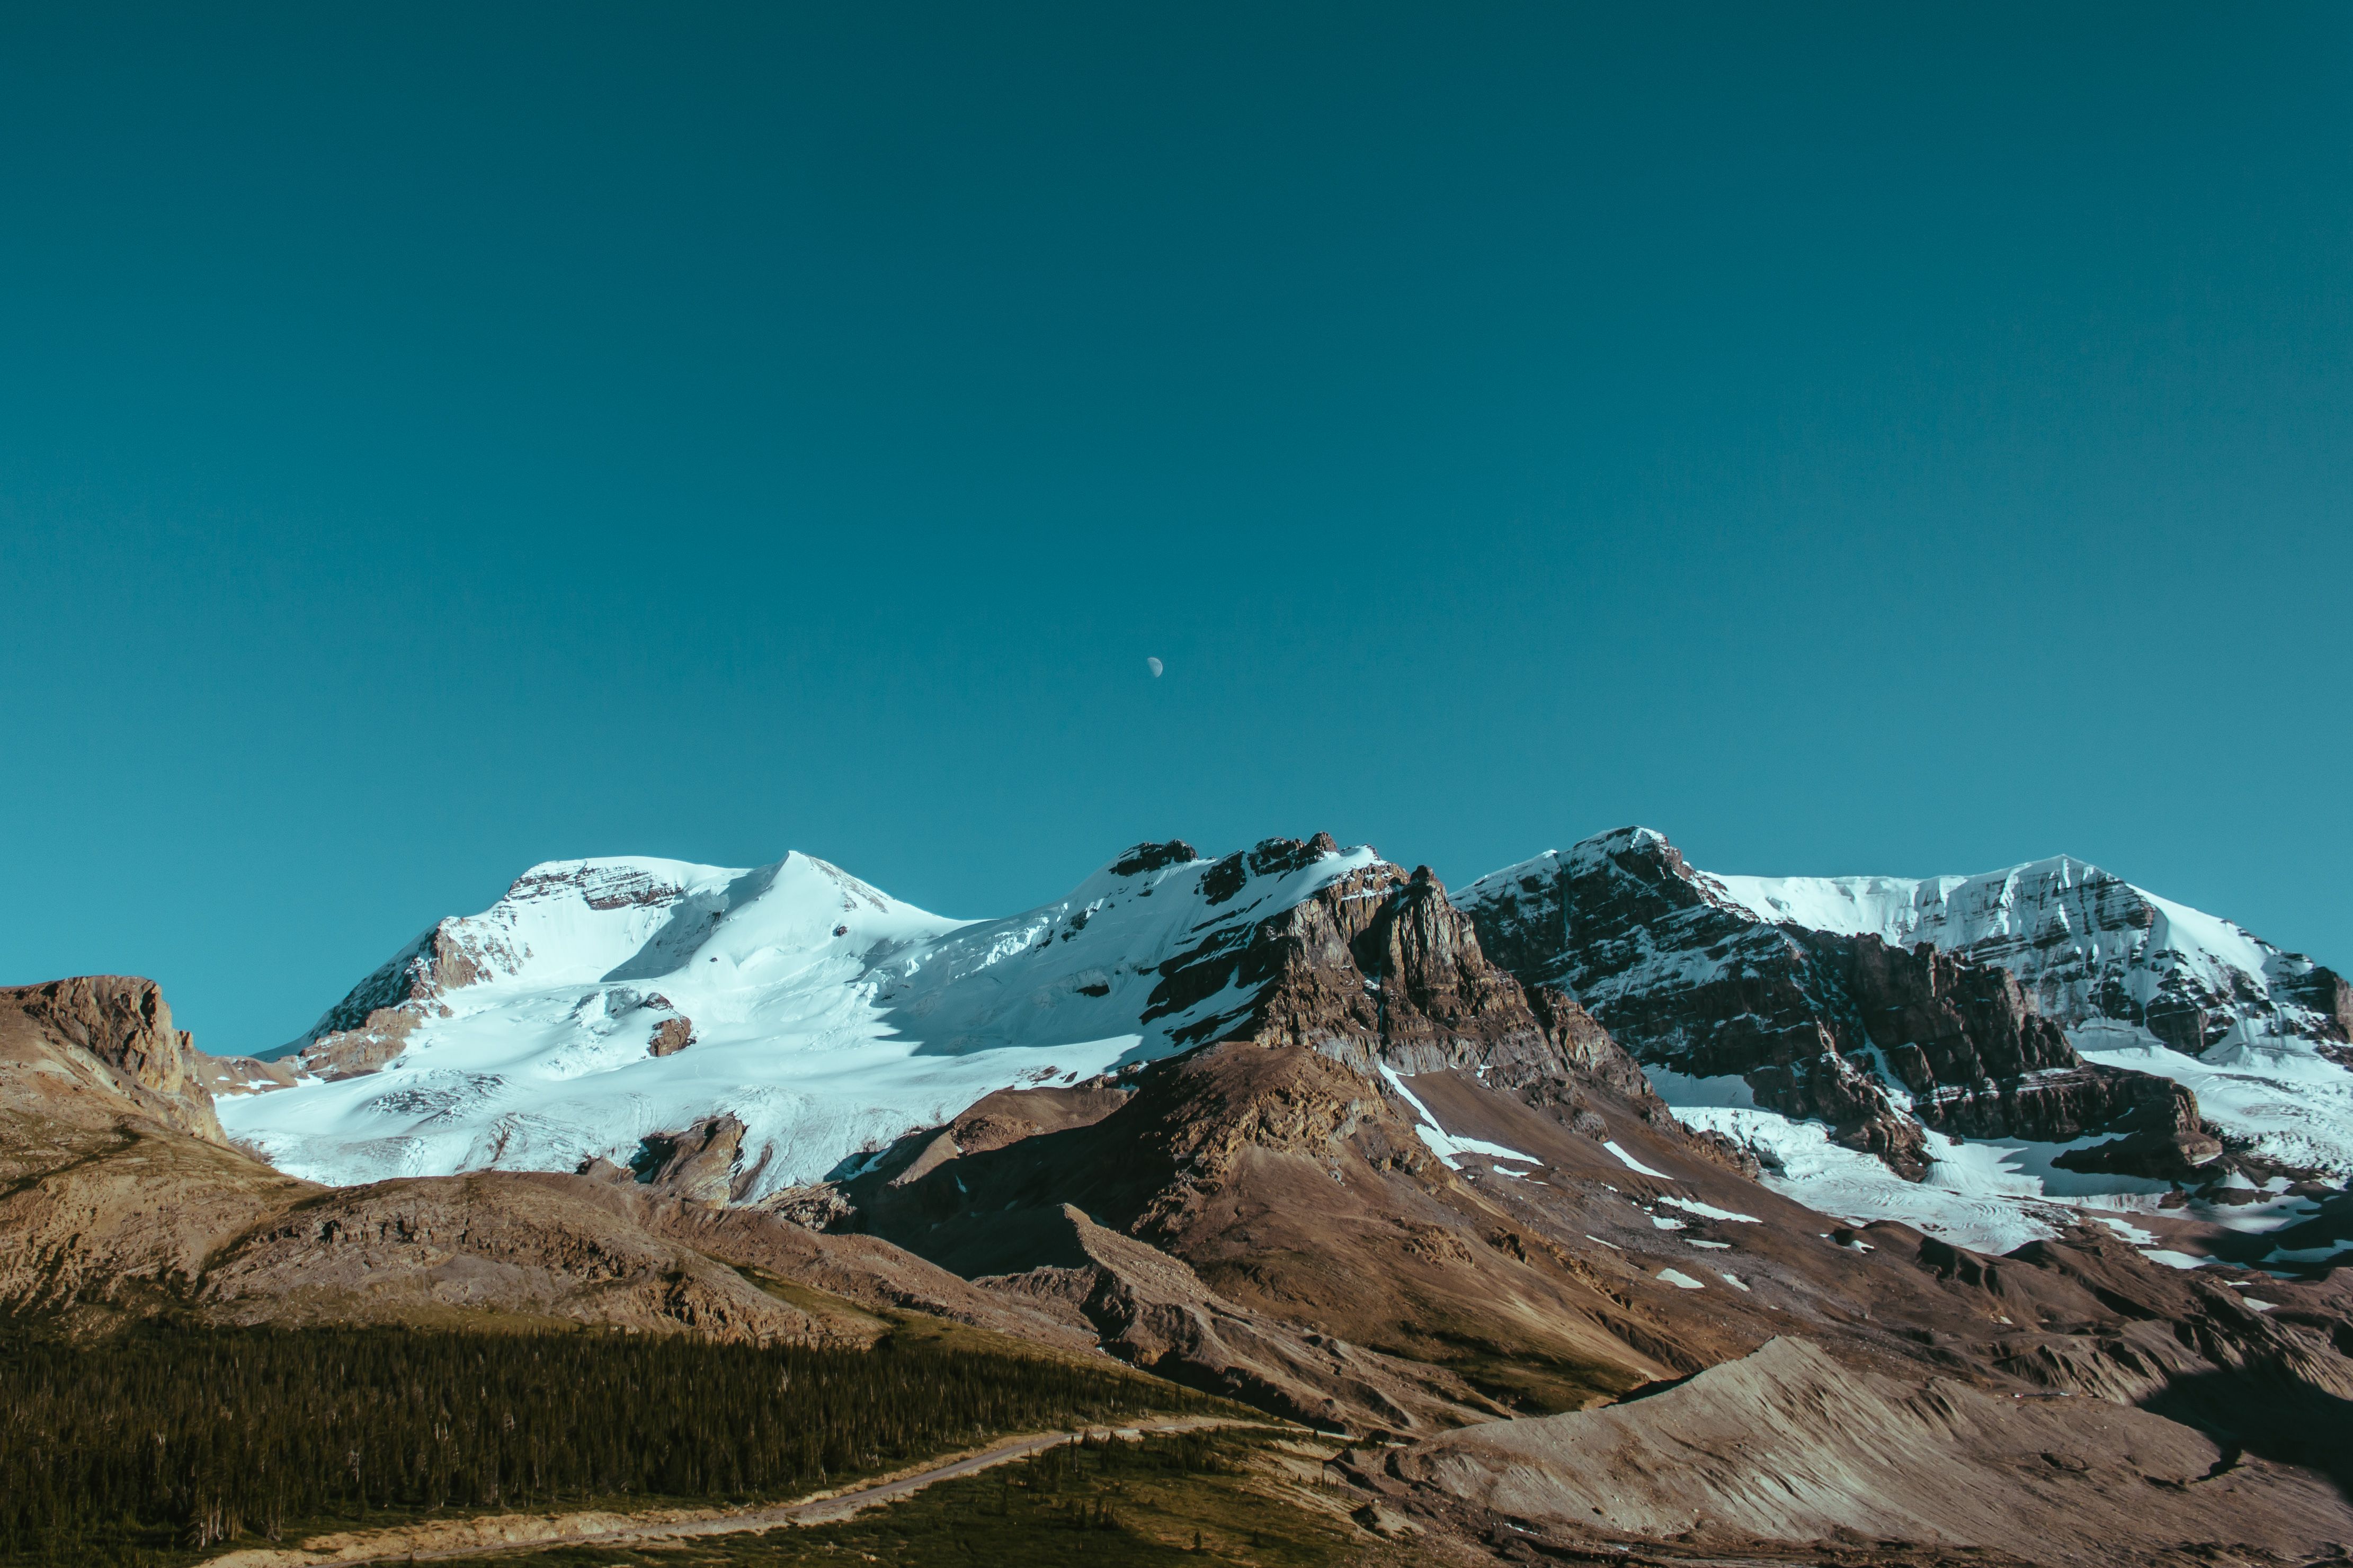 Alpine mountains under a clear sky by Ryan Schroeder